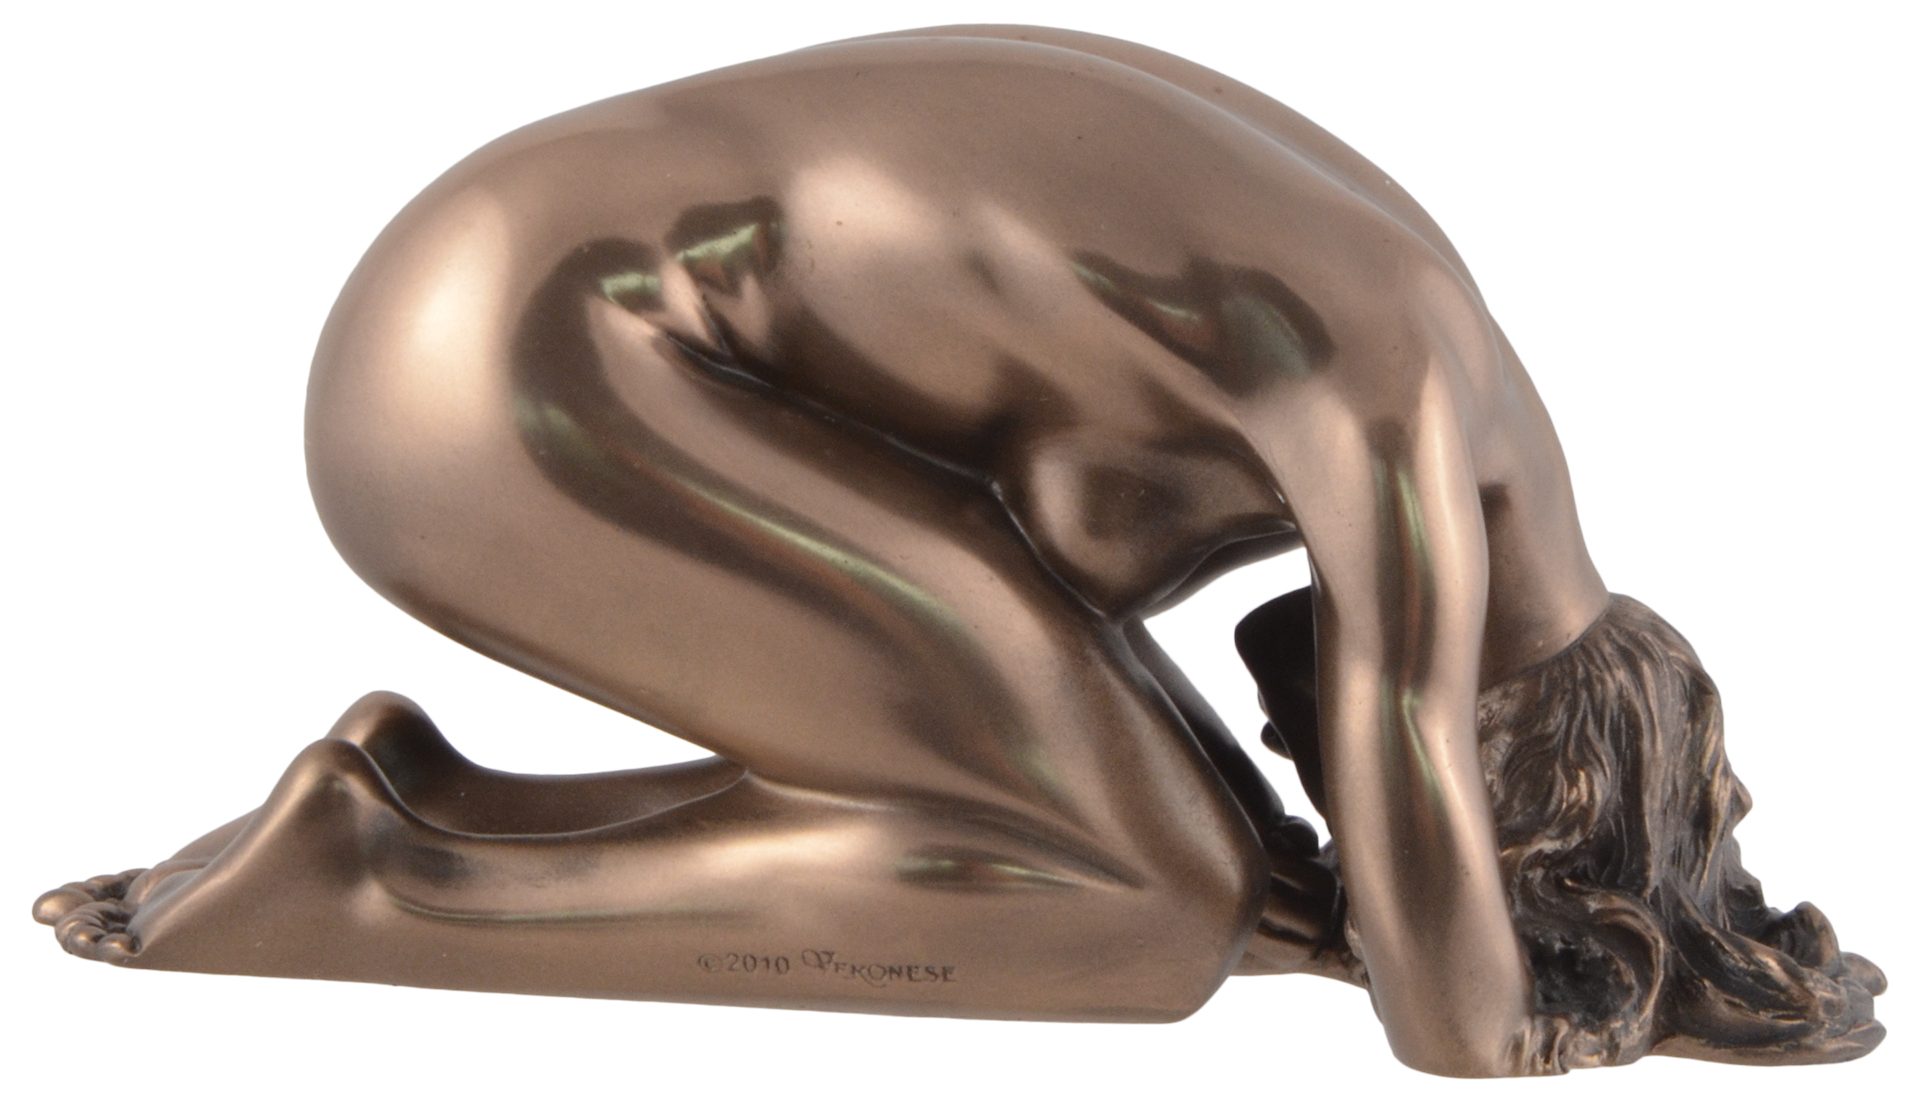 Gmbh bronziert, Nackte Kowtow von Akt - 15x8x8cm direct Dekofigur LxBxH: Dienerin Veronese, Vogler Hand ca. in by Pose kniend